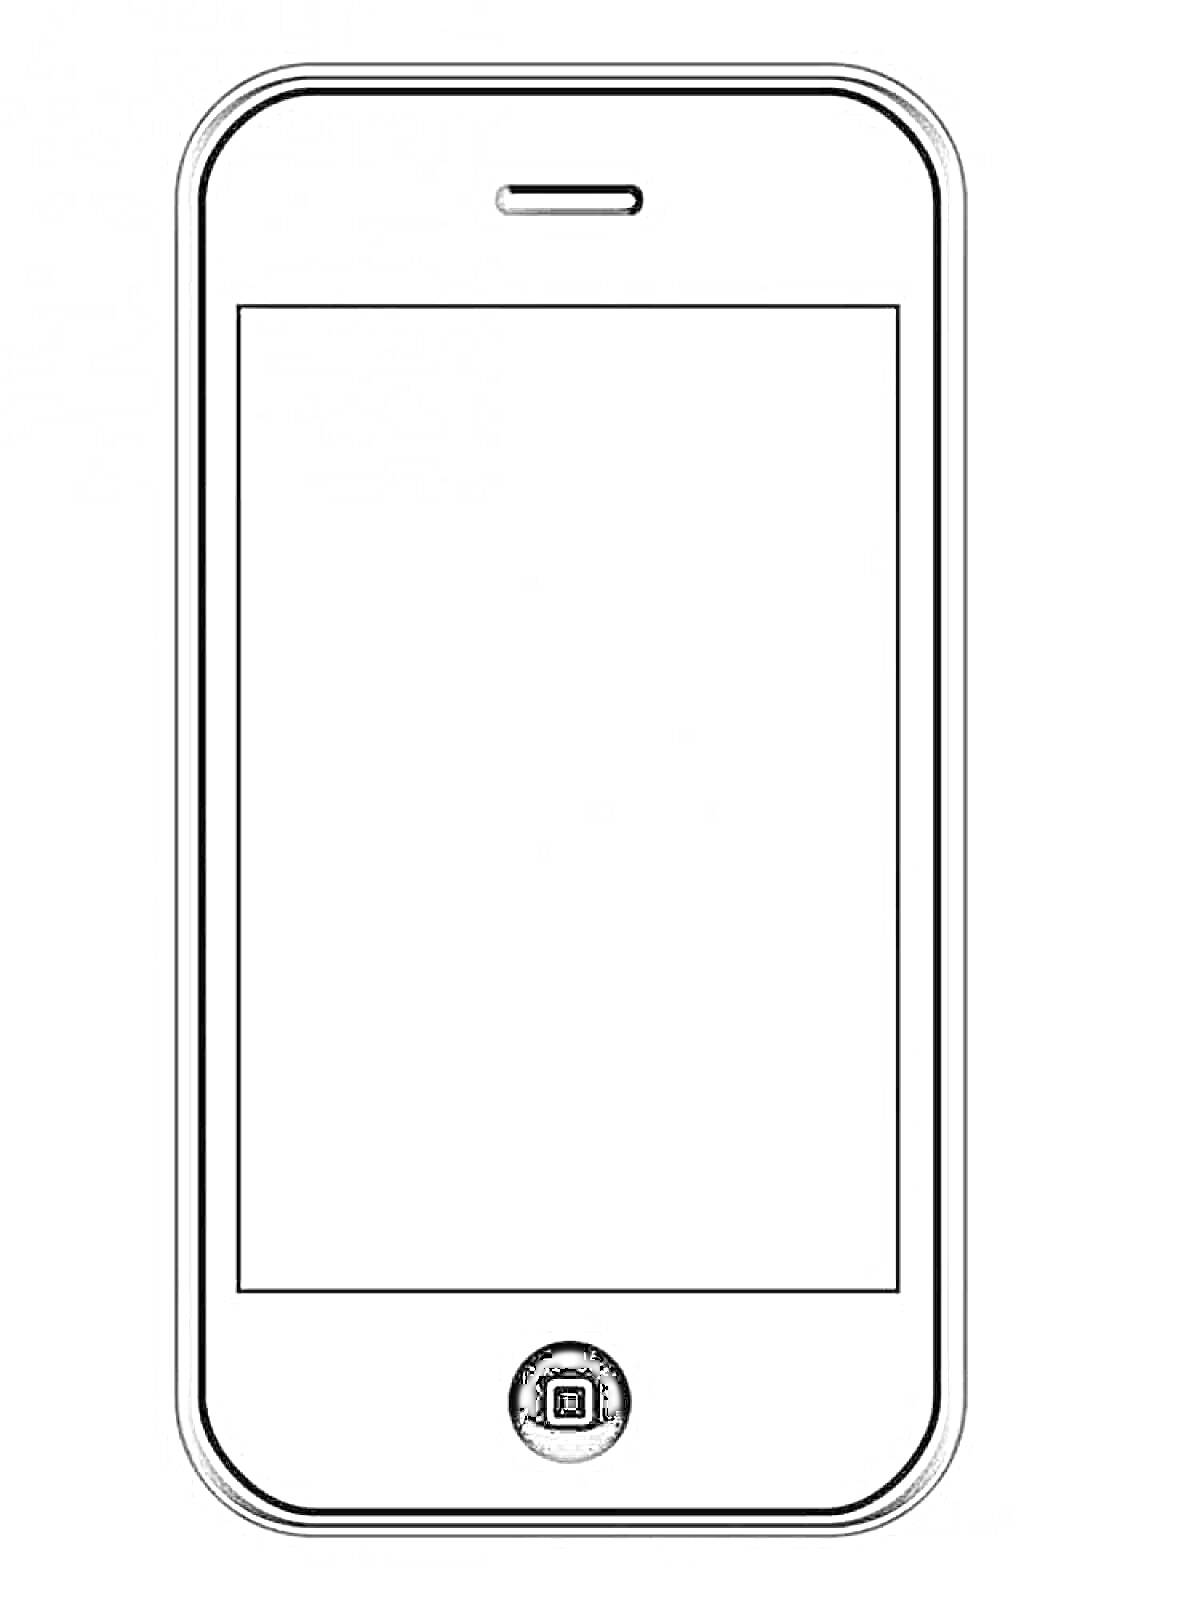 Раскраска Раскраска Айфон с экраном и кнопкой 